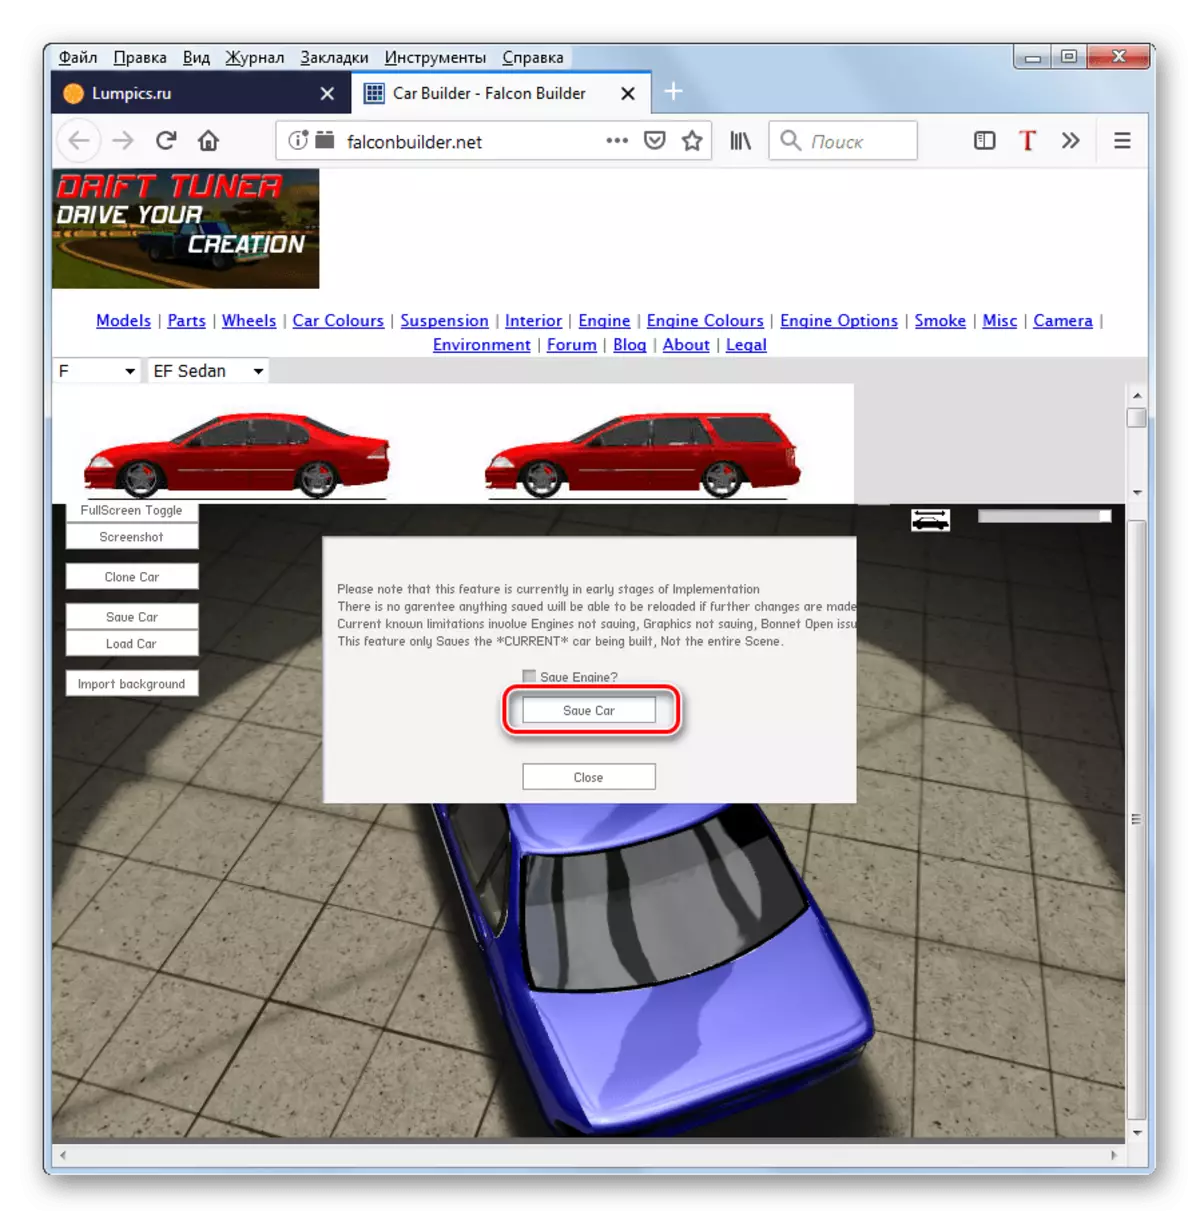 Potwierdzenie wynikowego obrazu samochodu w oknie dialogowym Falconbuilder w przeglądarce Mozilli Firefox